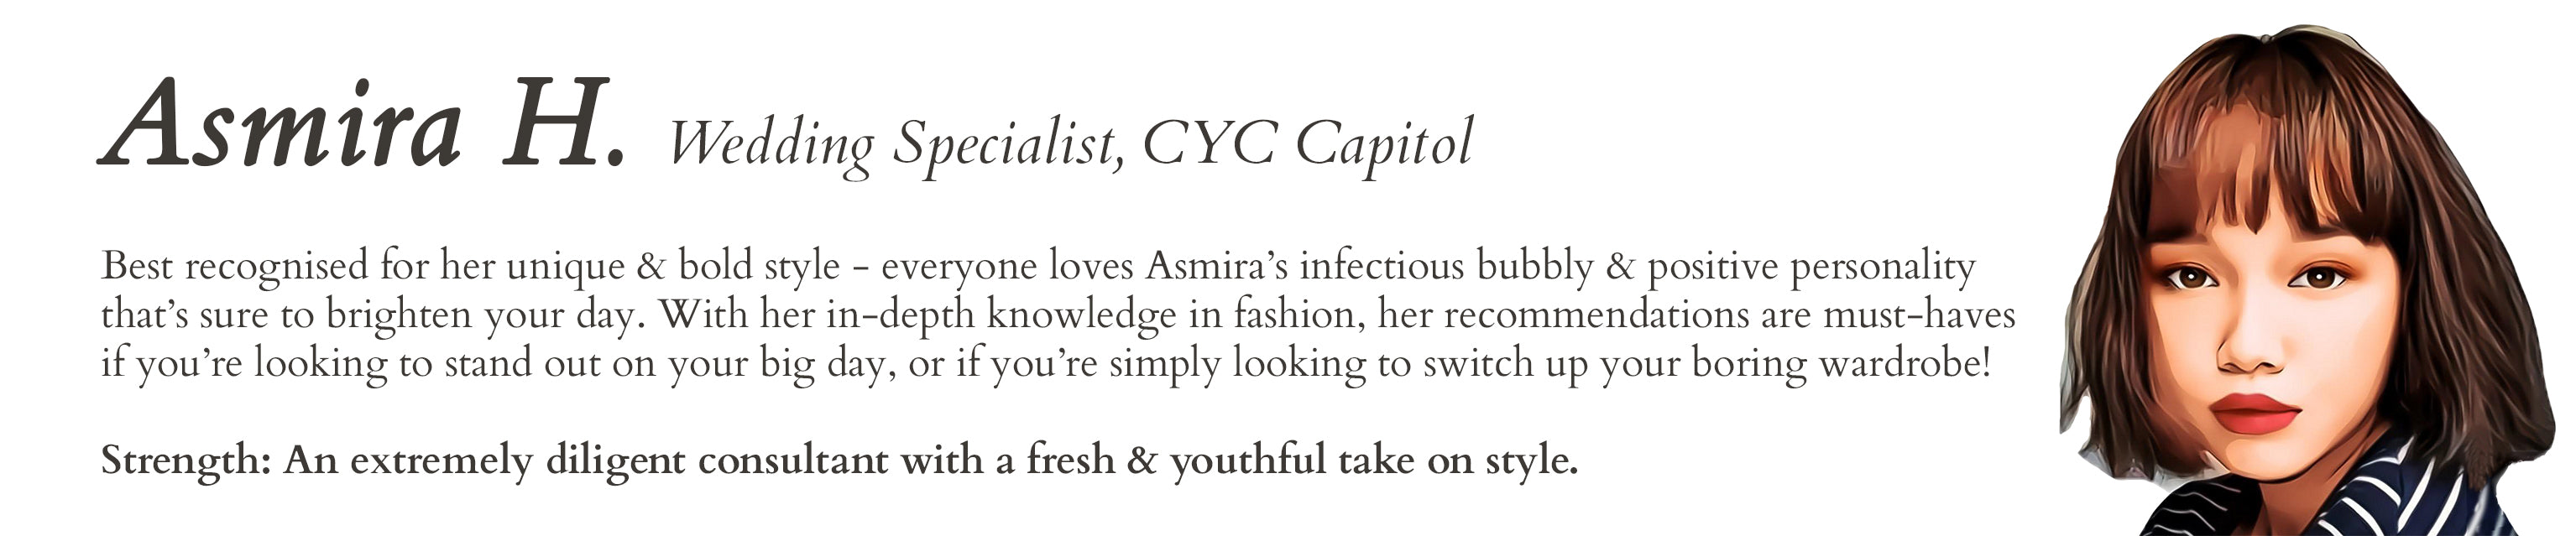 CYC Capitol Consultant Asmira H.